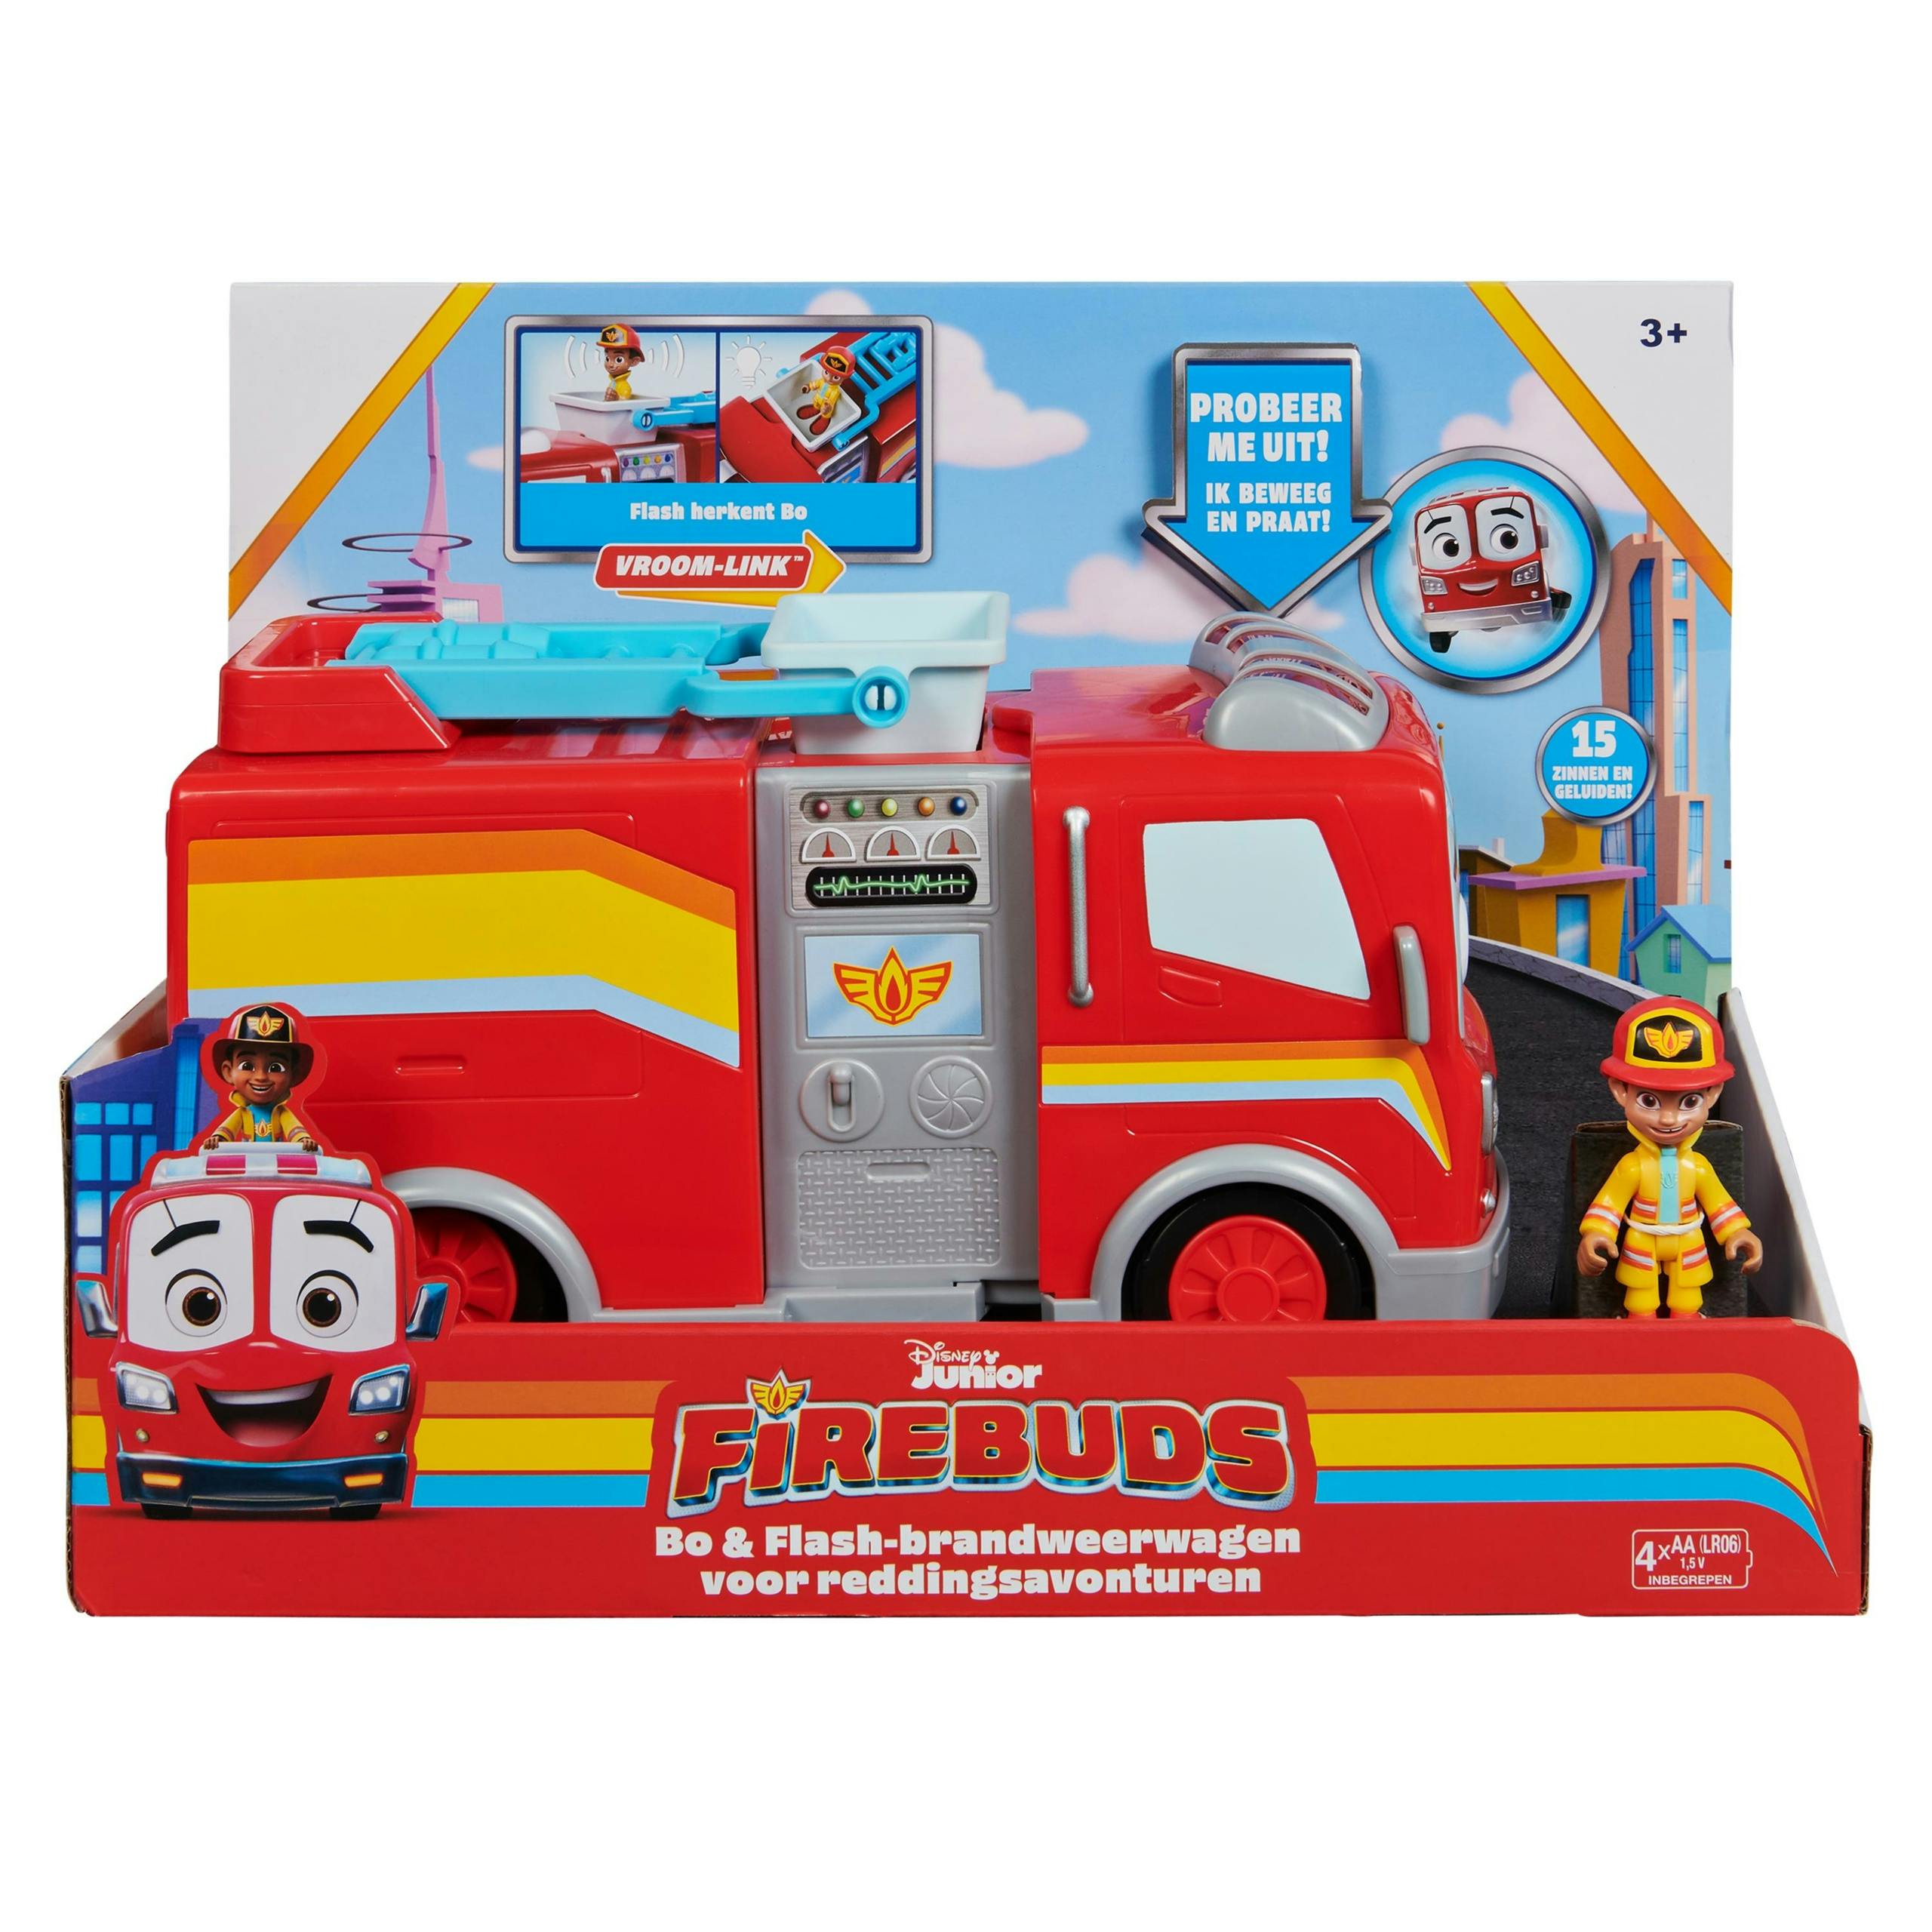 Firebuds – Action Vehicule (assortment